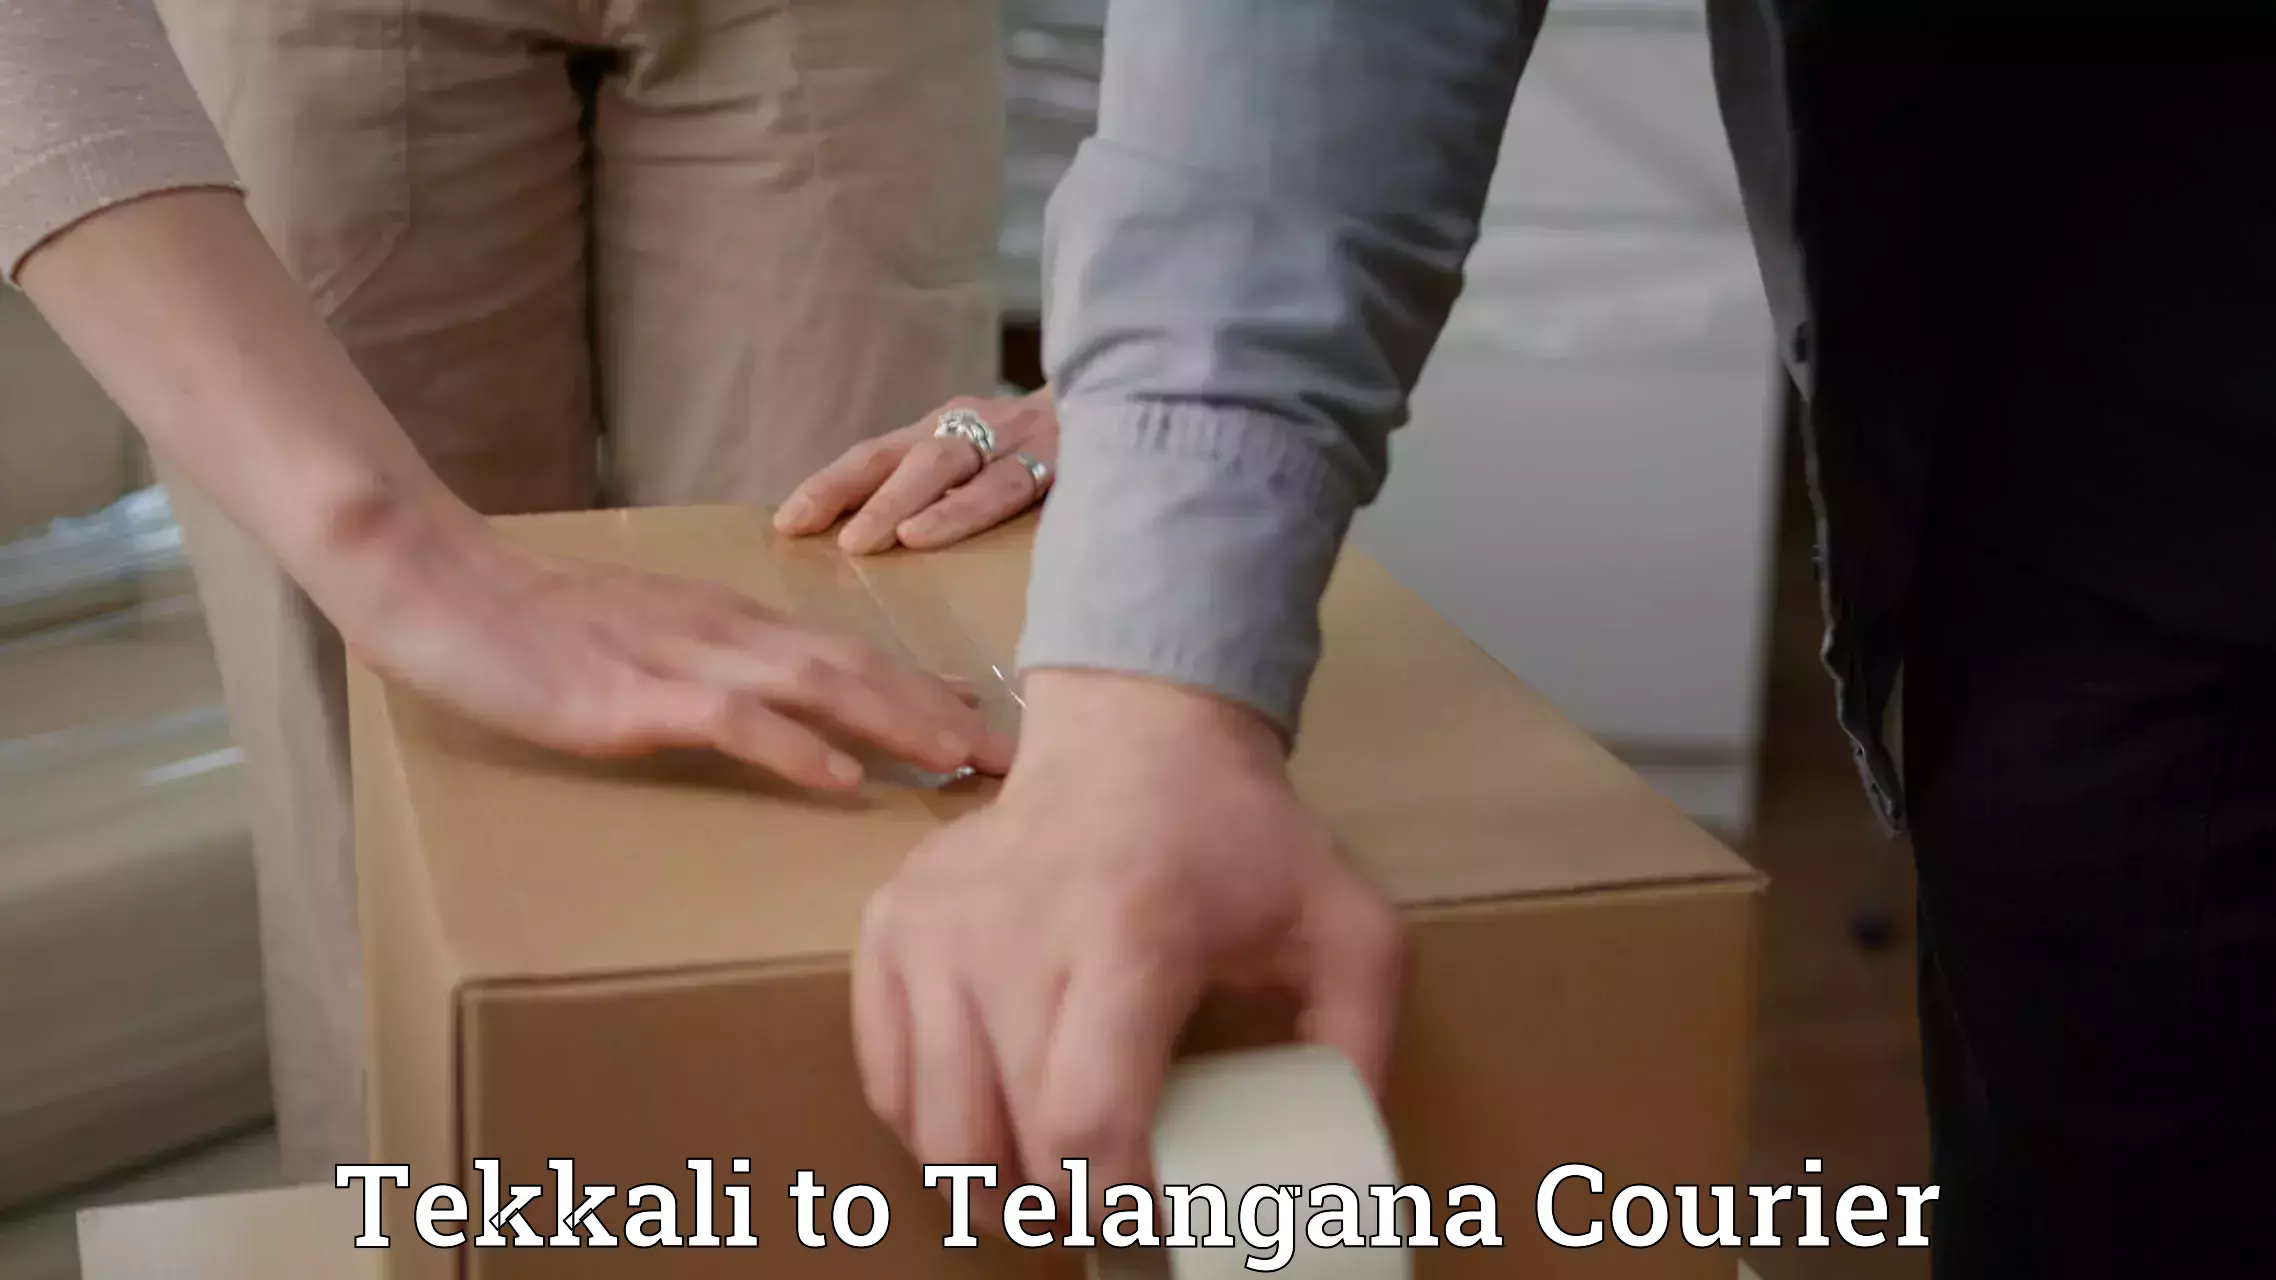 Luggage transport guidelines in Tekkali to Telangana